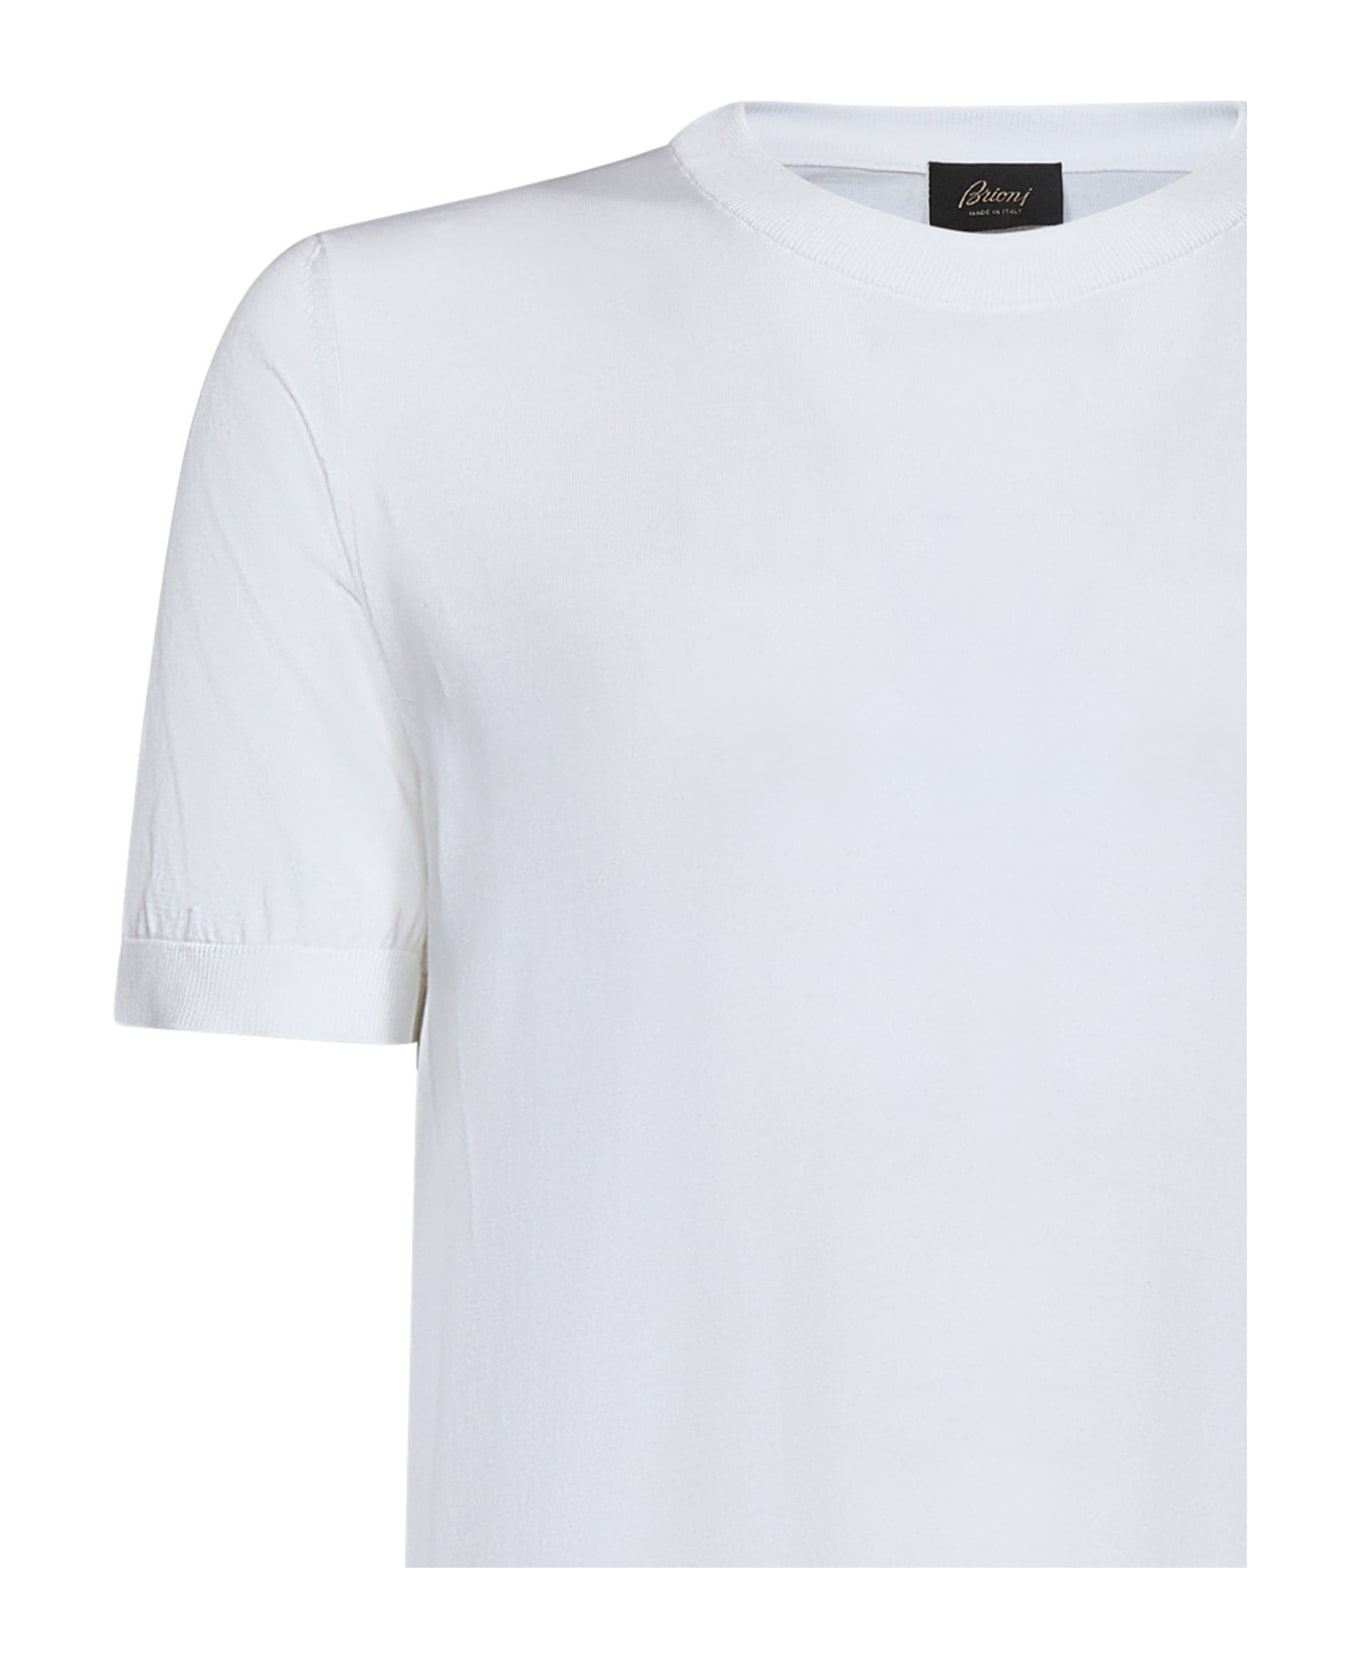 Brioni Sweater - WHITE シャツ